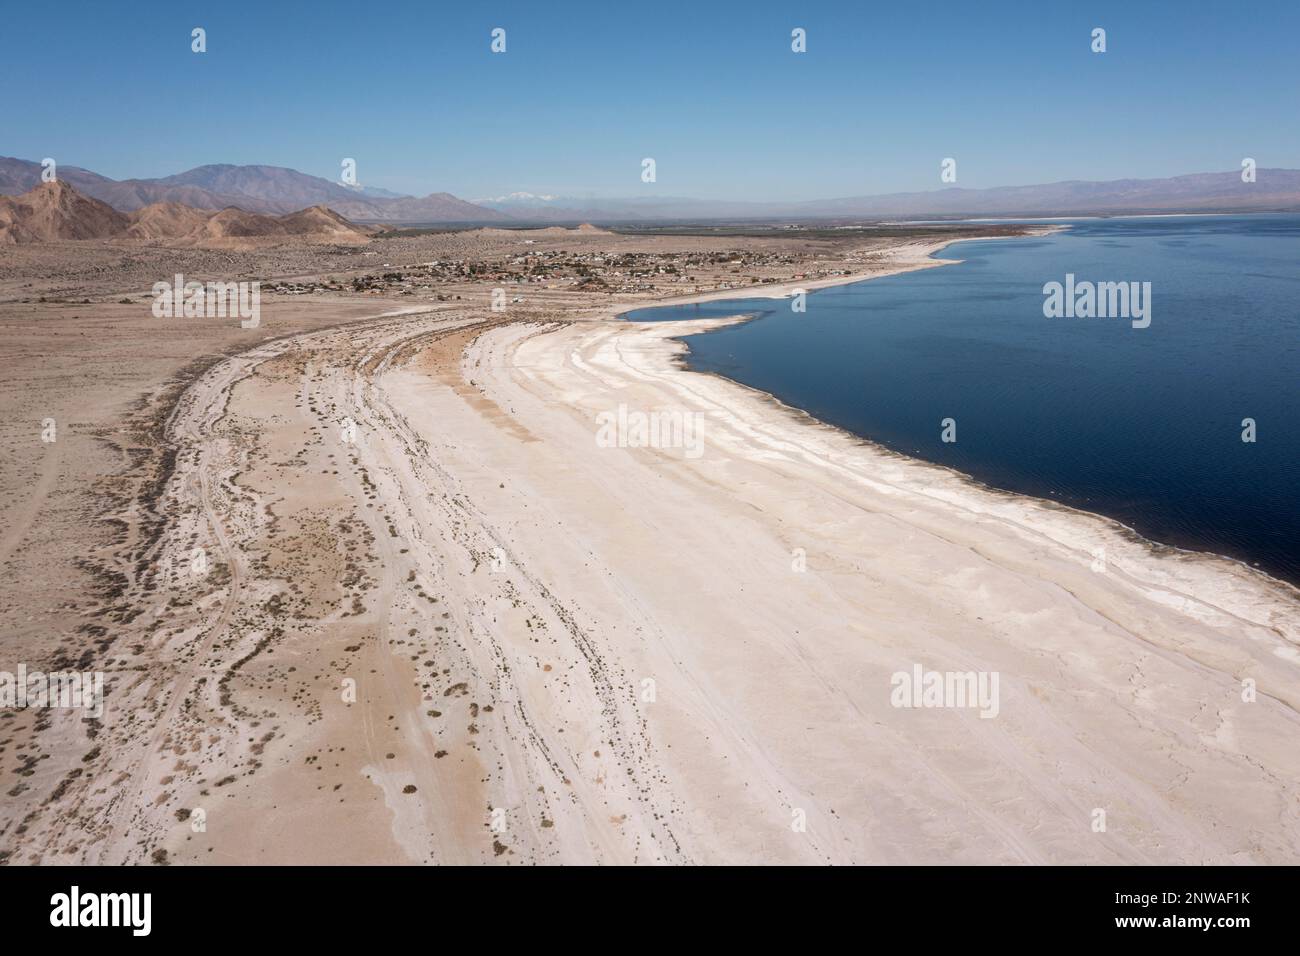 La mer de Salton en Californie se rétrécit rapidement en raison d'une sécheresse persistante. Les toxines dans le lit lacéré nouvellement exposé ont créé une crise majeure de santé publique. Banque D'Images